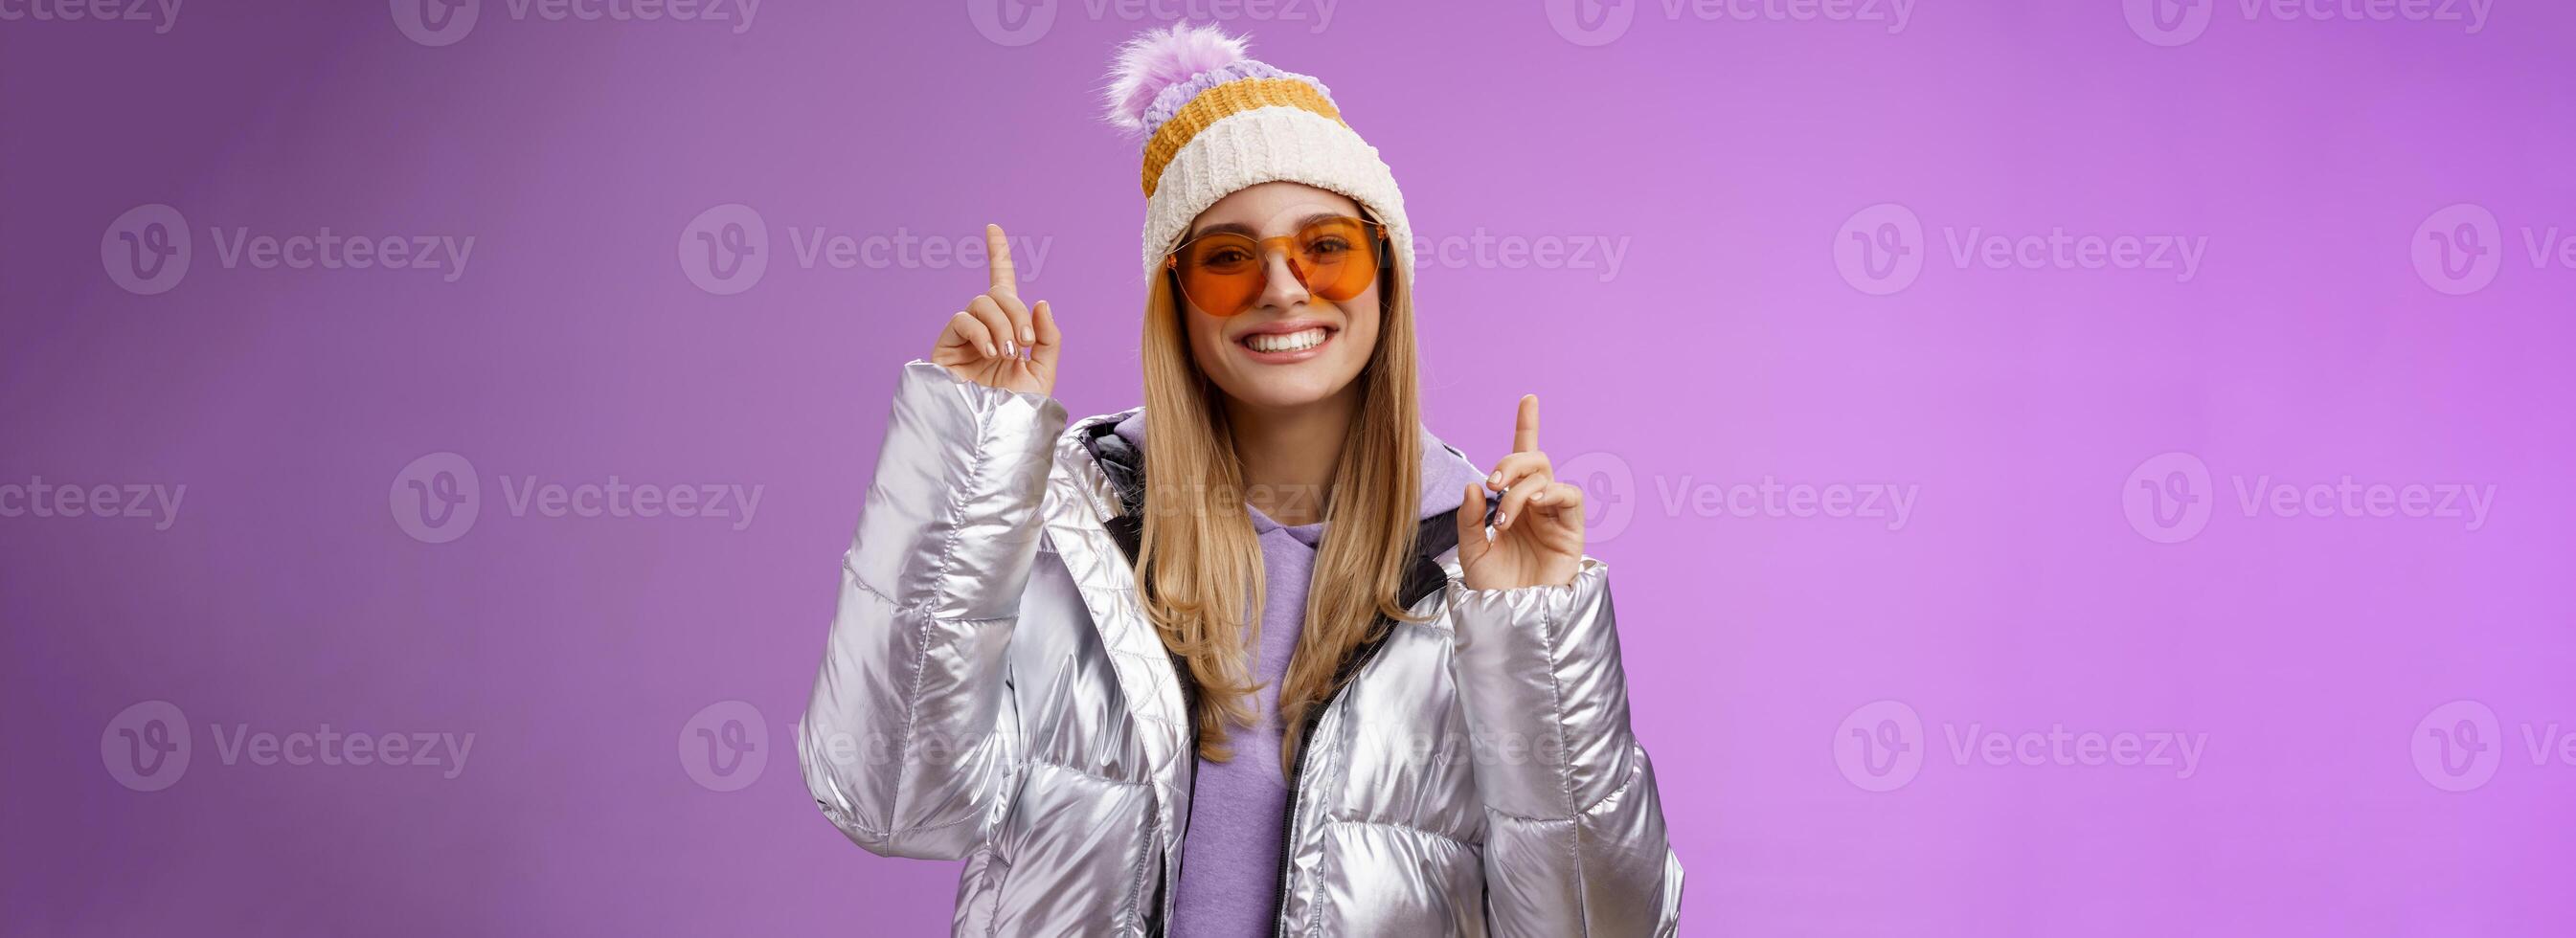 froh erregt unterhalten süß blond Frau haben Spaß genießen Ferien schneebedeckt Berg Ausflug tragen Sonnenbrille Silber Jacke Winter Hut Tanzen zeigen oben amüsiert Stehen lila Hintergrund foto